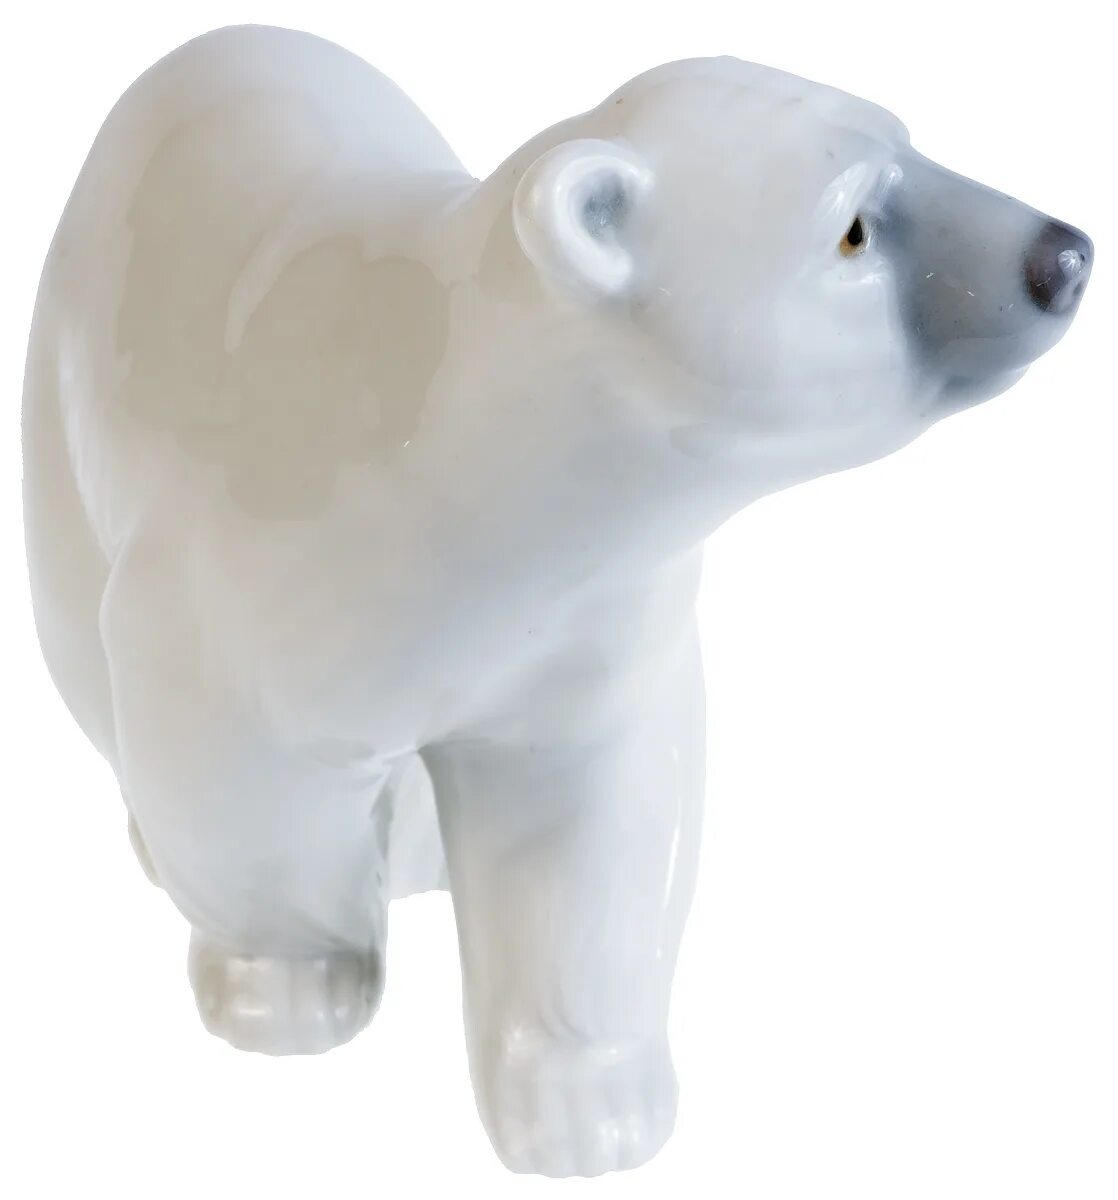 Белые фигурки. Lladro белый медведь. Фигурка Lladro белый медведь. Фарфоровые статуэтки Lladro белый медведь. Белый медведь. Медвежонок. Умка. ЛФЗ..